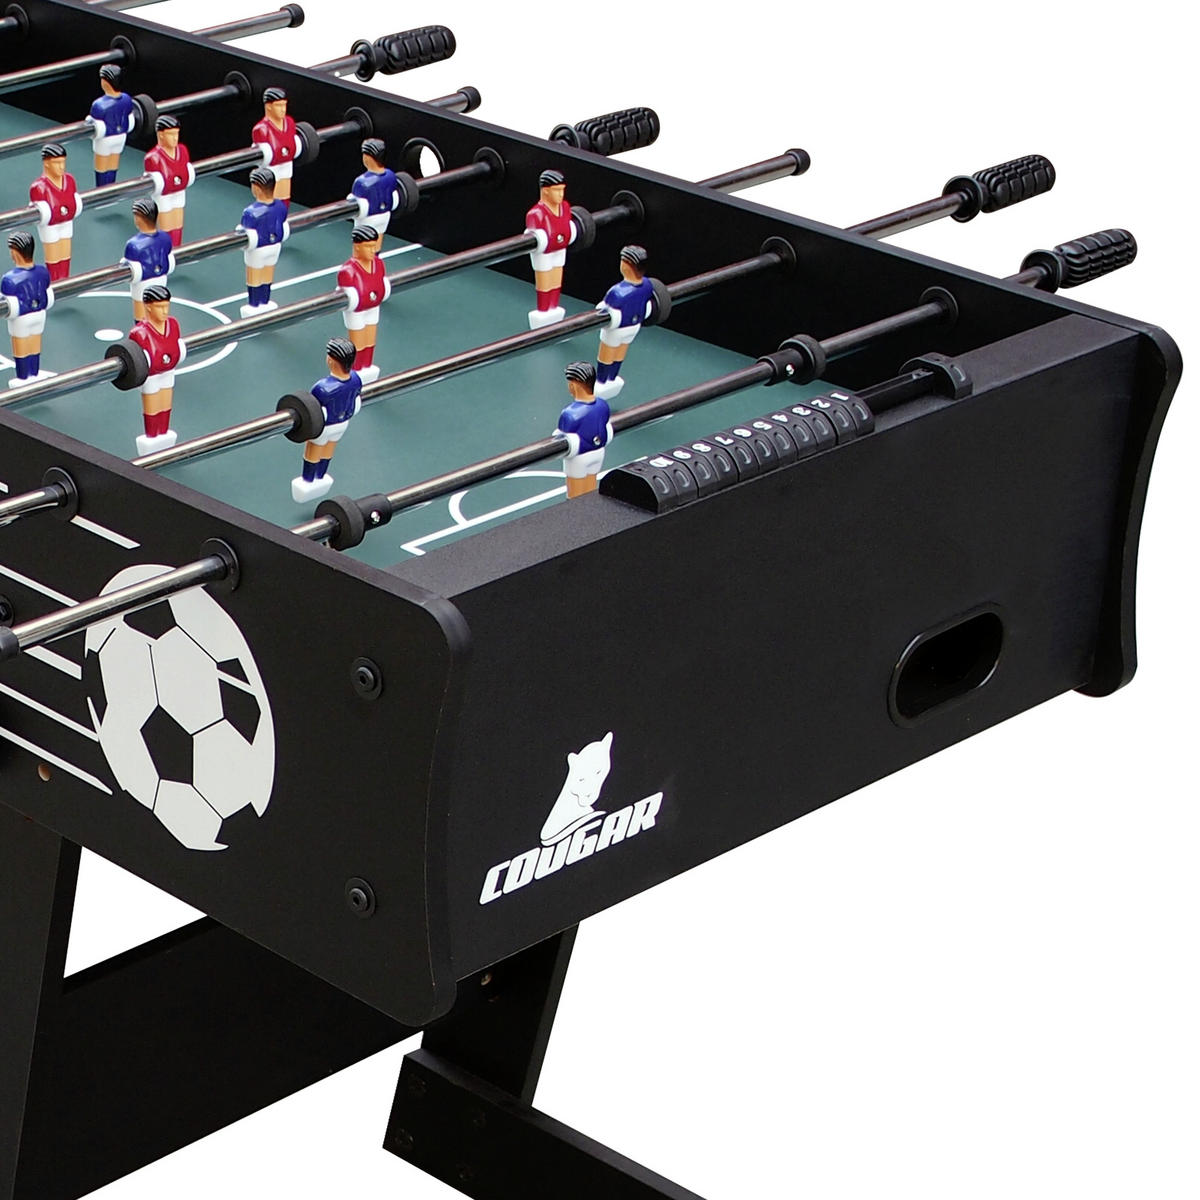 Tischfußball Folding Soccer Kicker Klappkicker Tischkicker Fußballtisch  klappbar schwarz : : Spielzeug